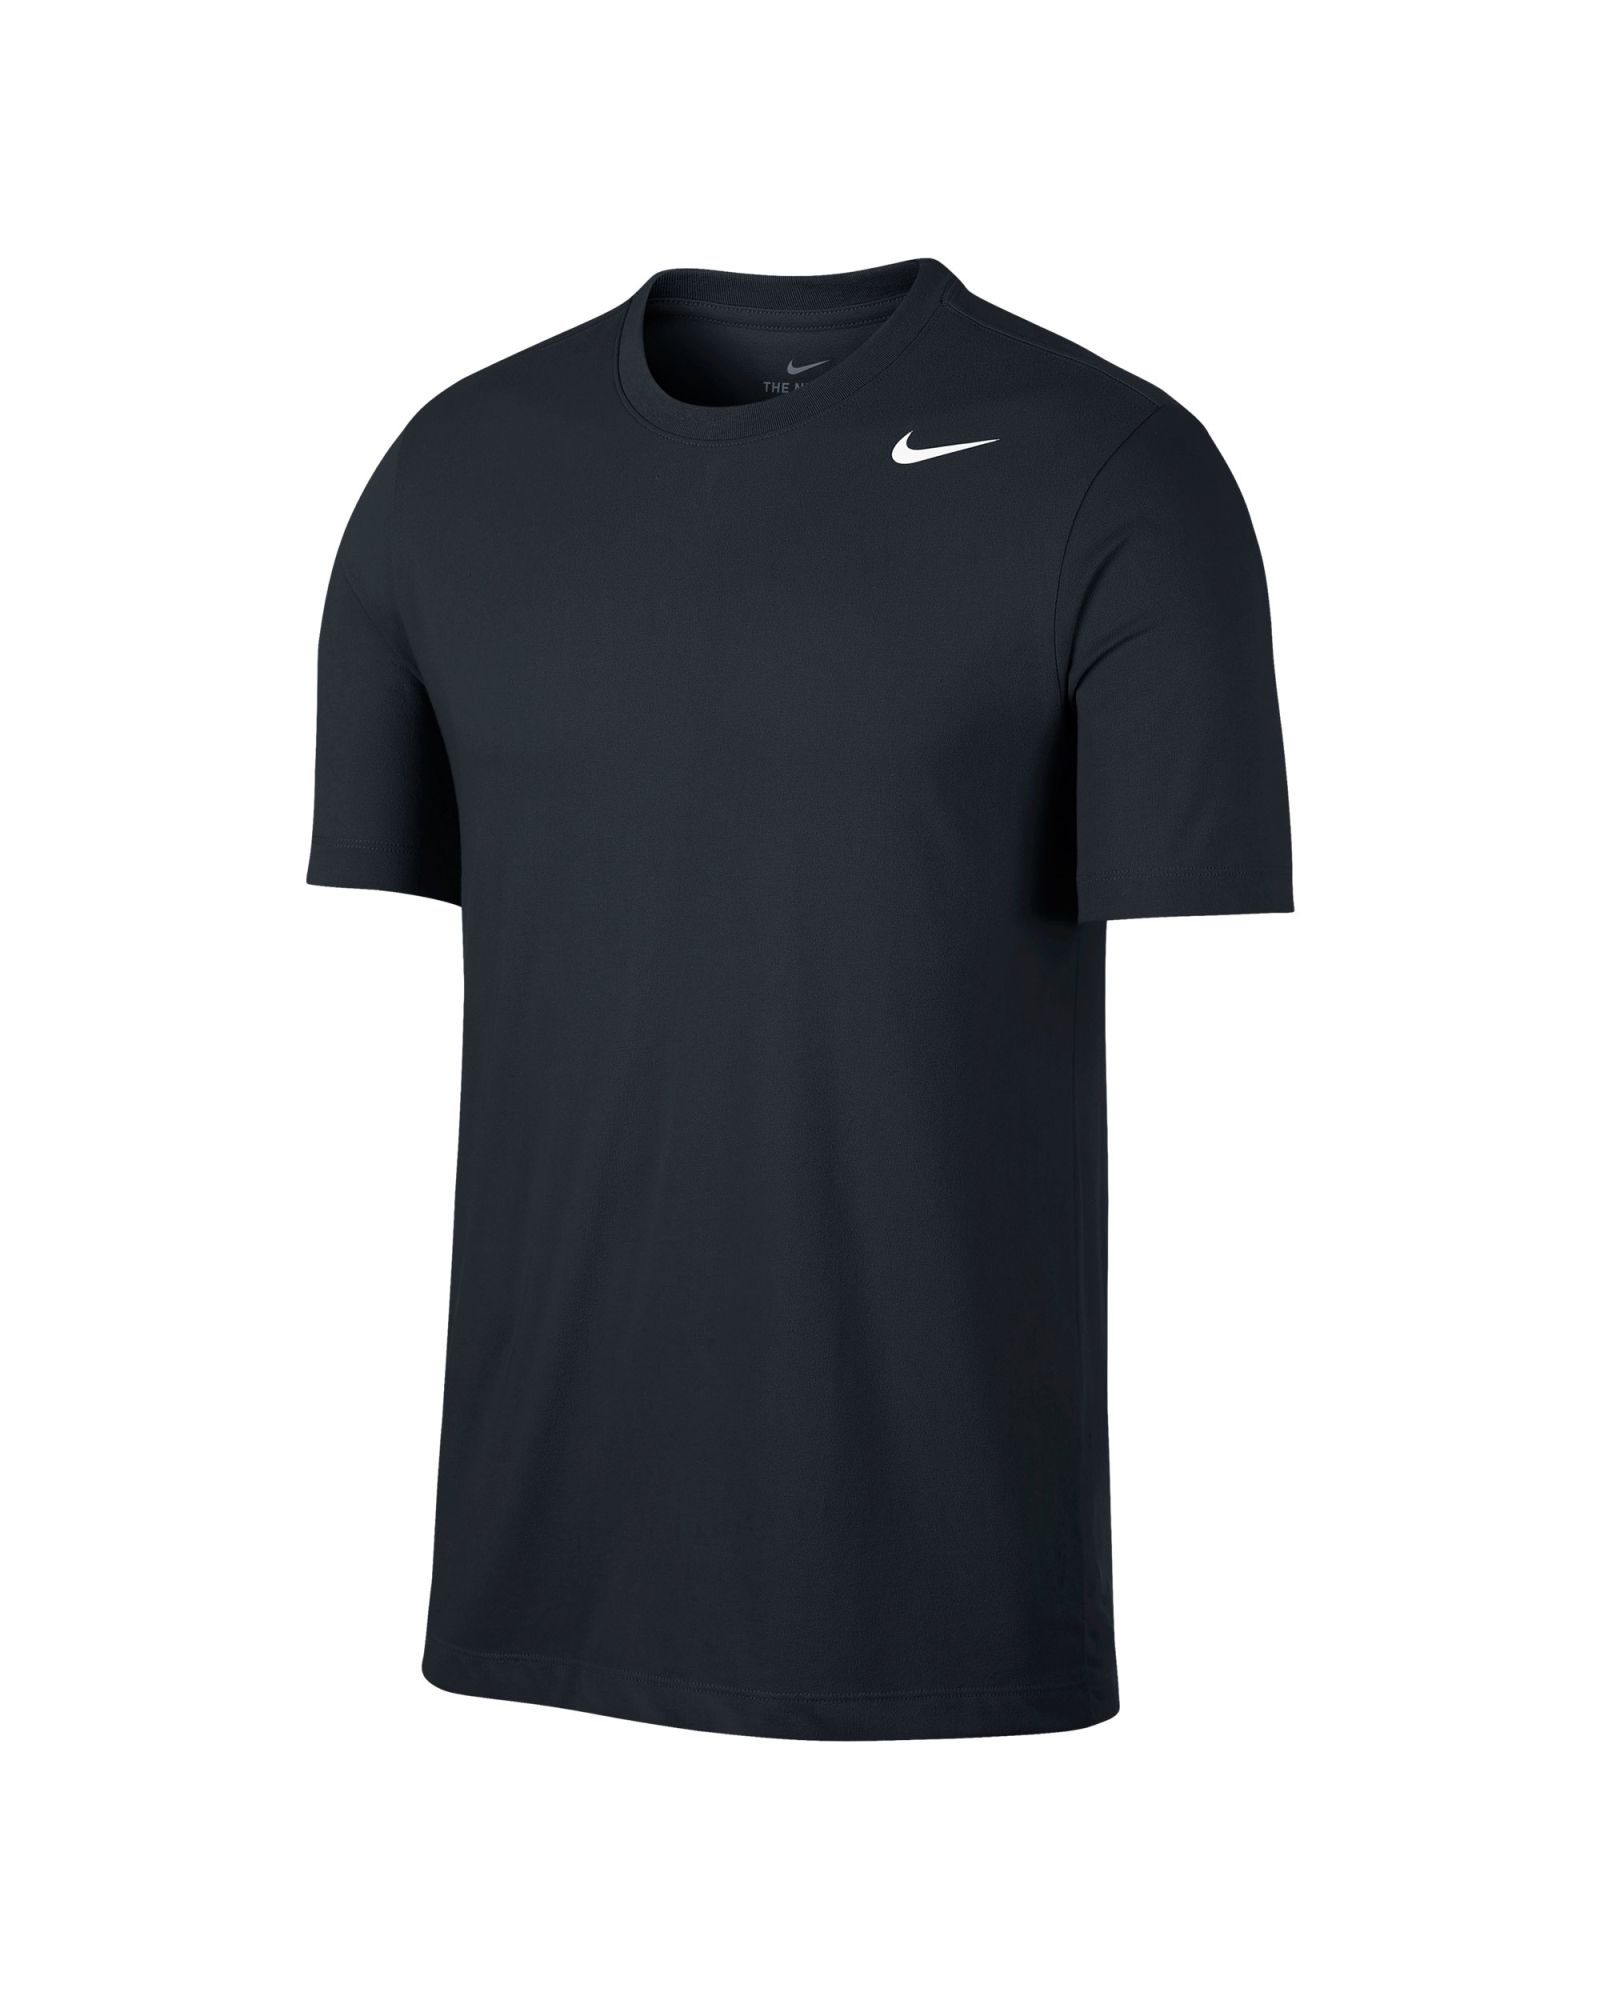 Camiseta Nike Dri-FIT - Fútbol Factory